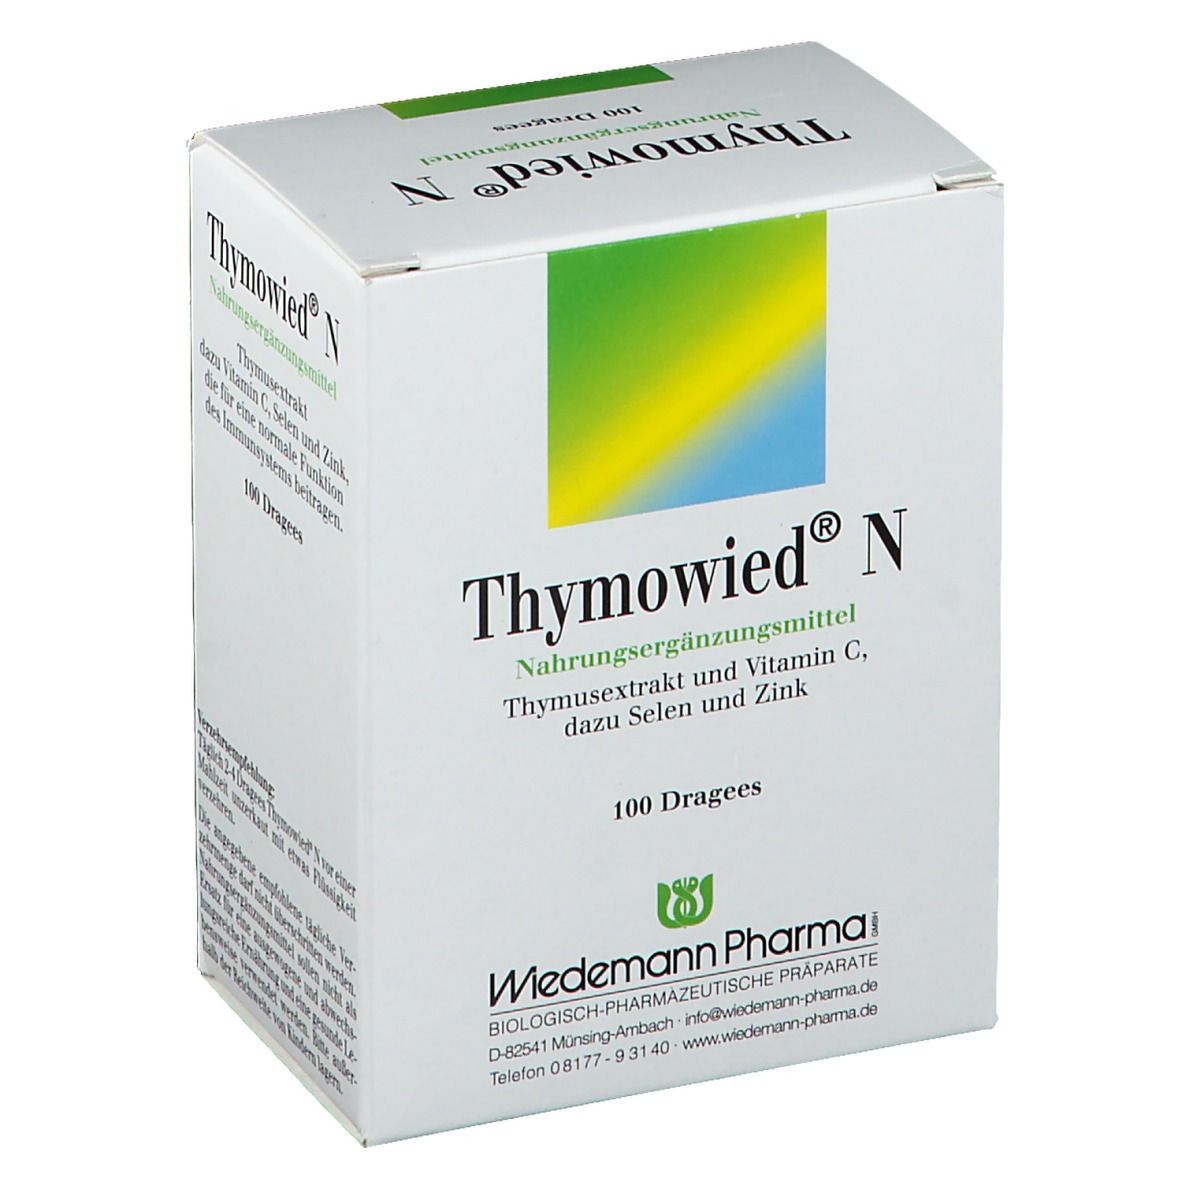 Thymowied® N